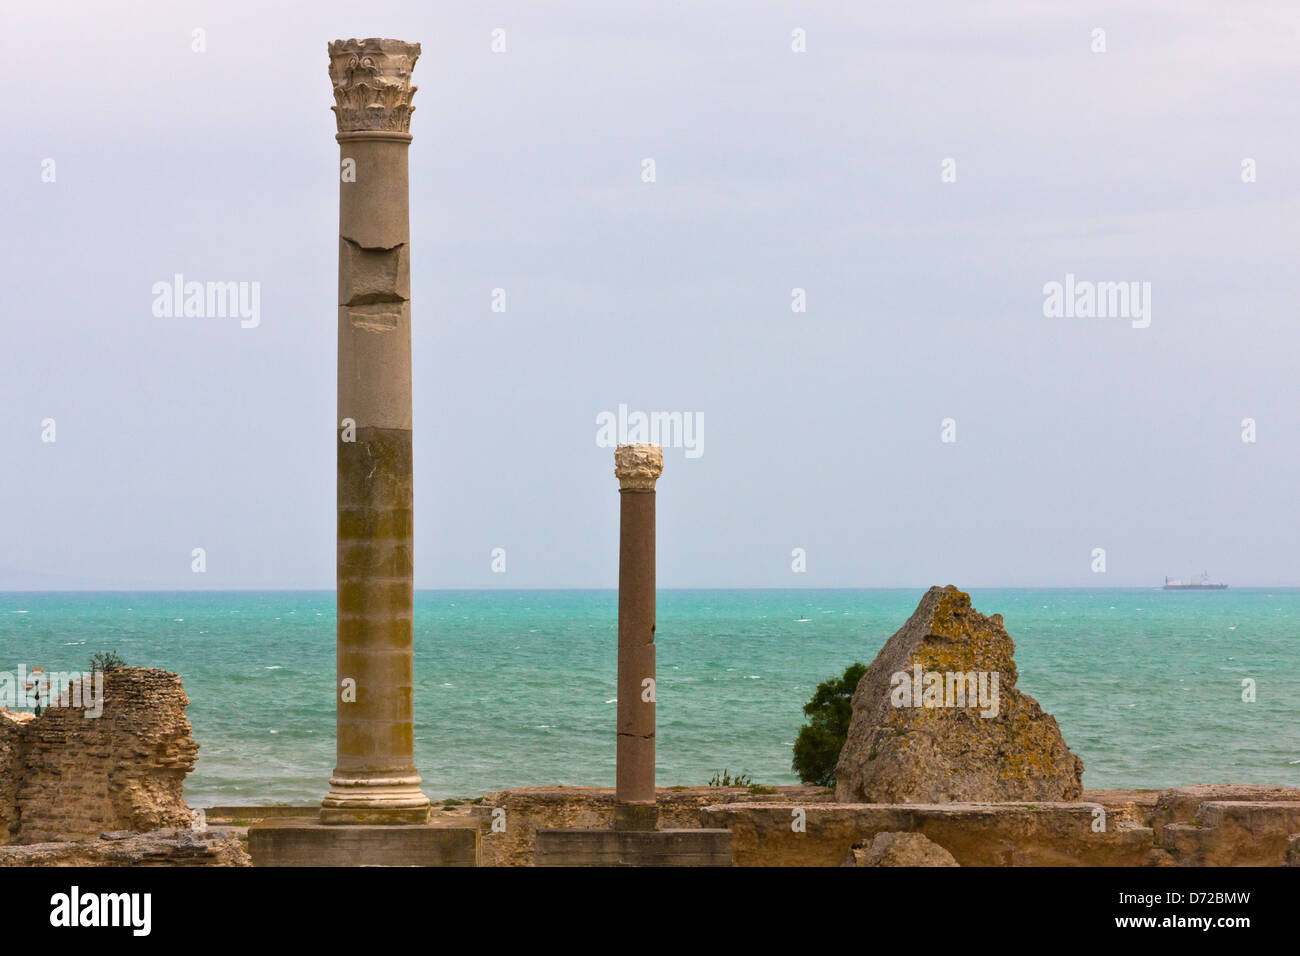 Colonna di bagno termale, le rovine romane di Cartagine, sito Patrimonio Mondiale dell'UNESCO, Tunisi, Tunisia Foto Stock